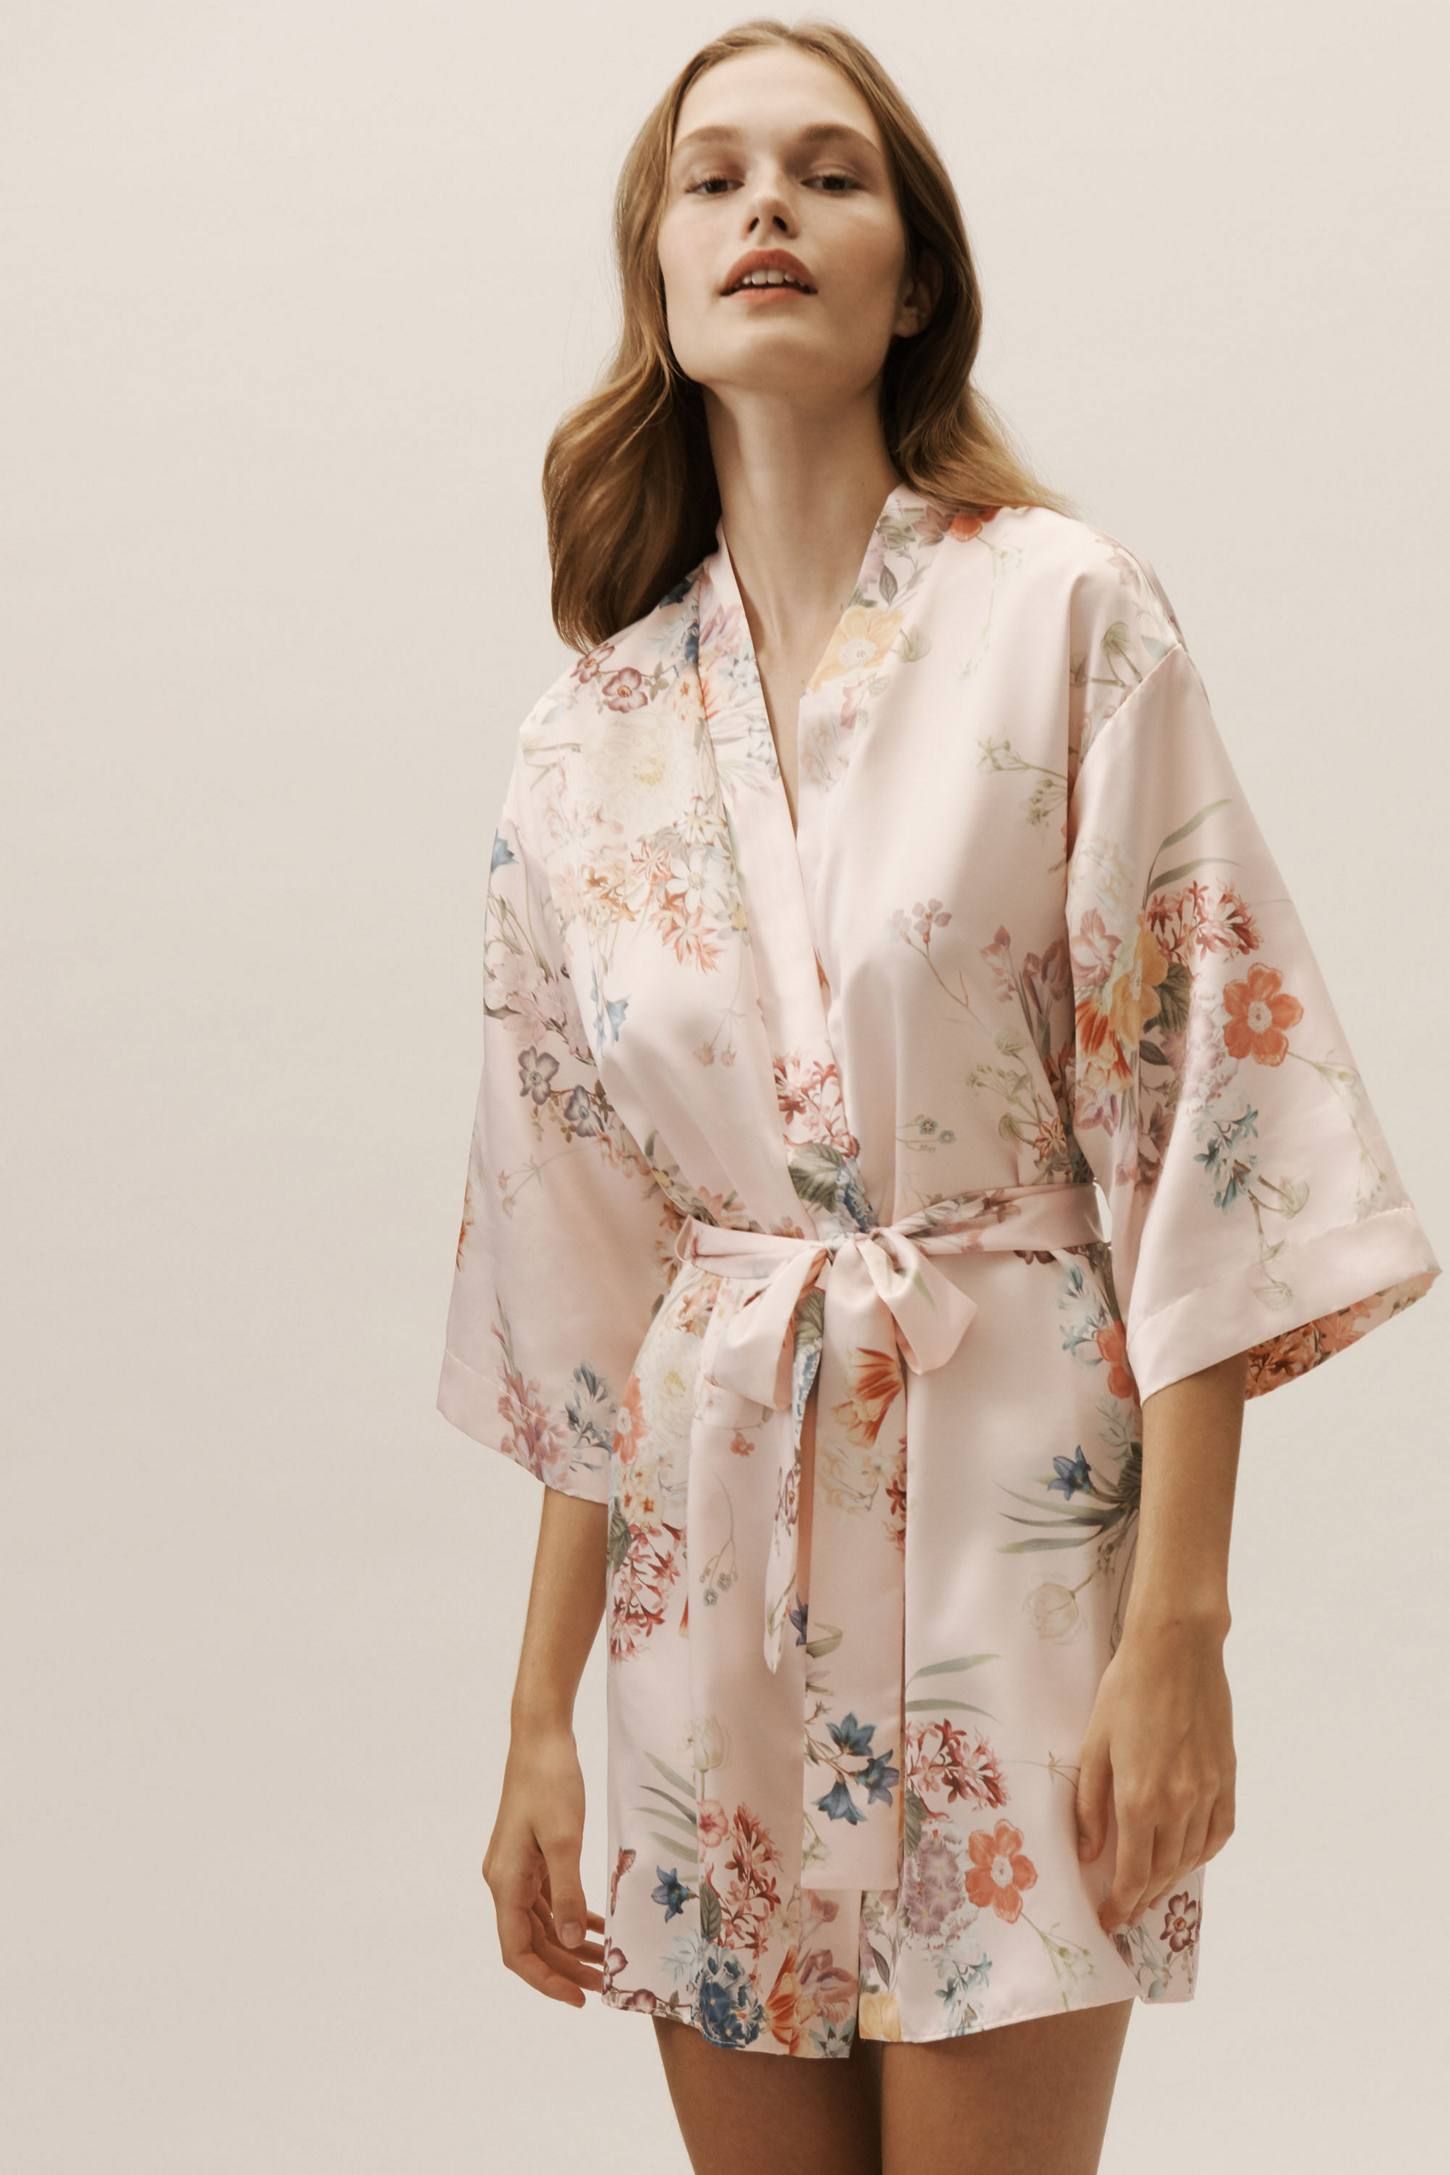 Comfortable Spa Robe Long Kimono Pajamas Robe Comfortable Spa Robe Simayixx Bathrobes for Women with Hood 